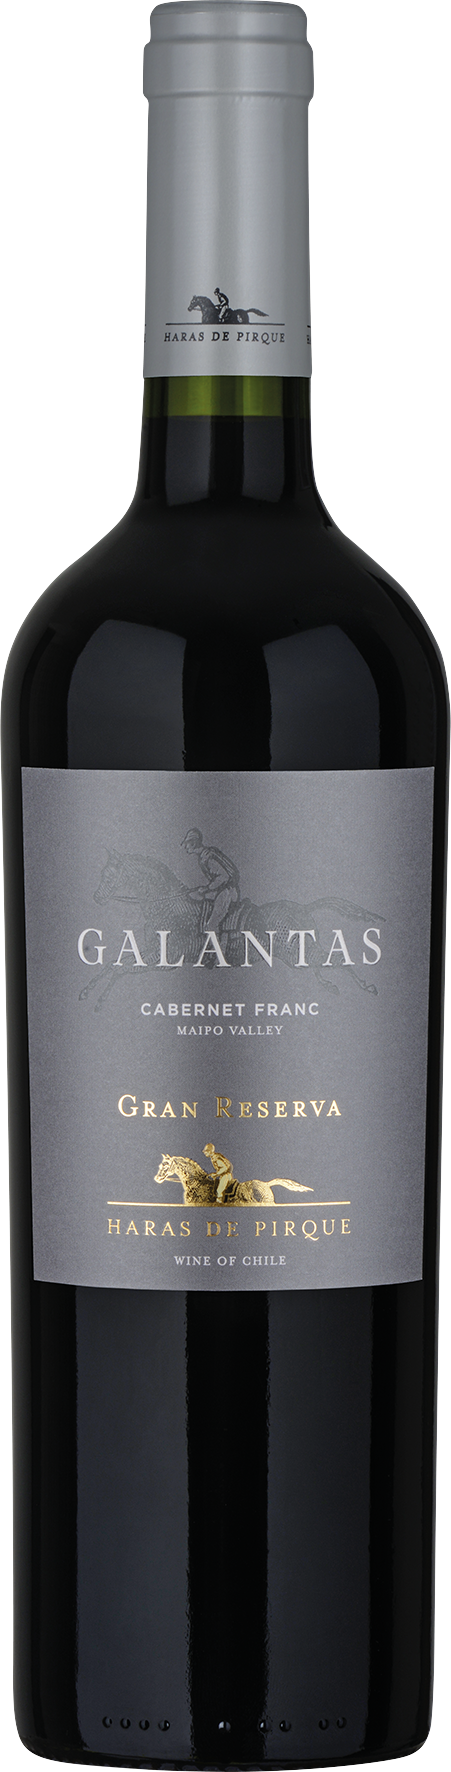 Galantas Cabernet Franc Gran Reserva - 2019